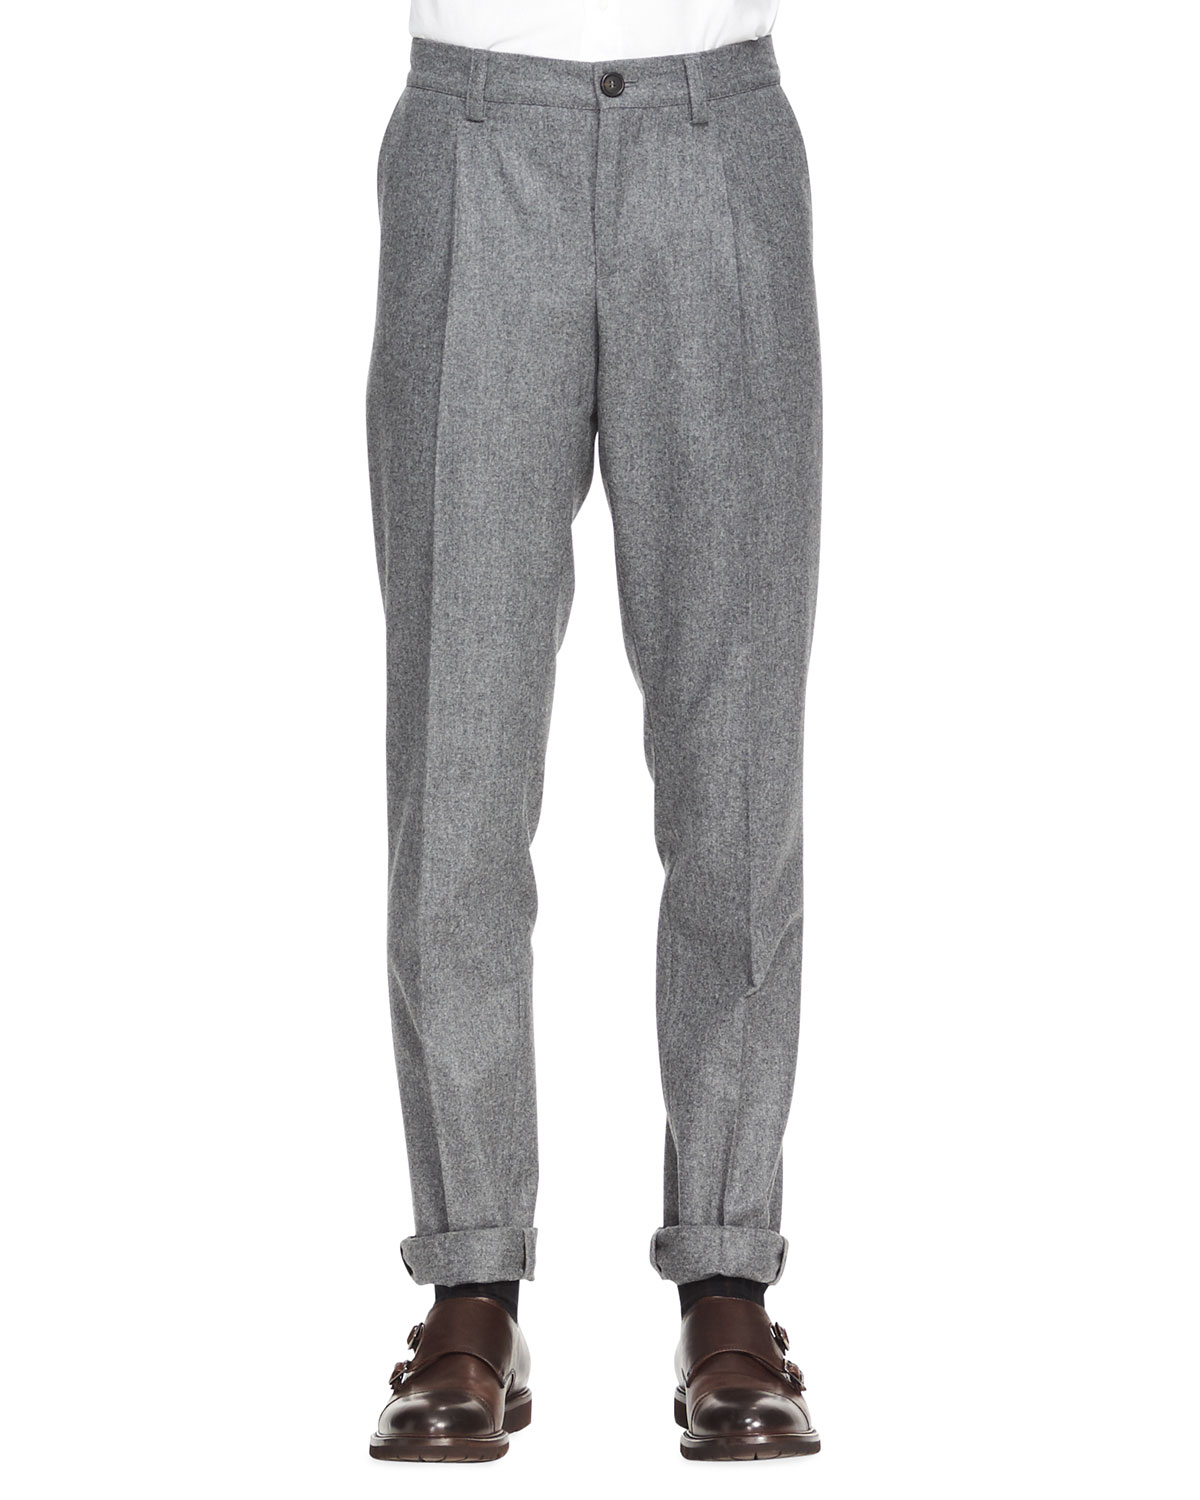 Lyst - Brunello cucinelli Single-pleat Flannel Pants in Gray for Men